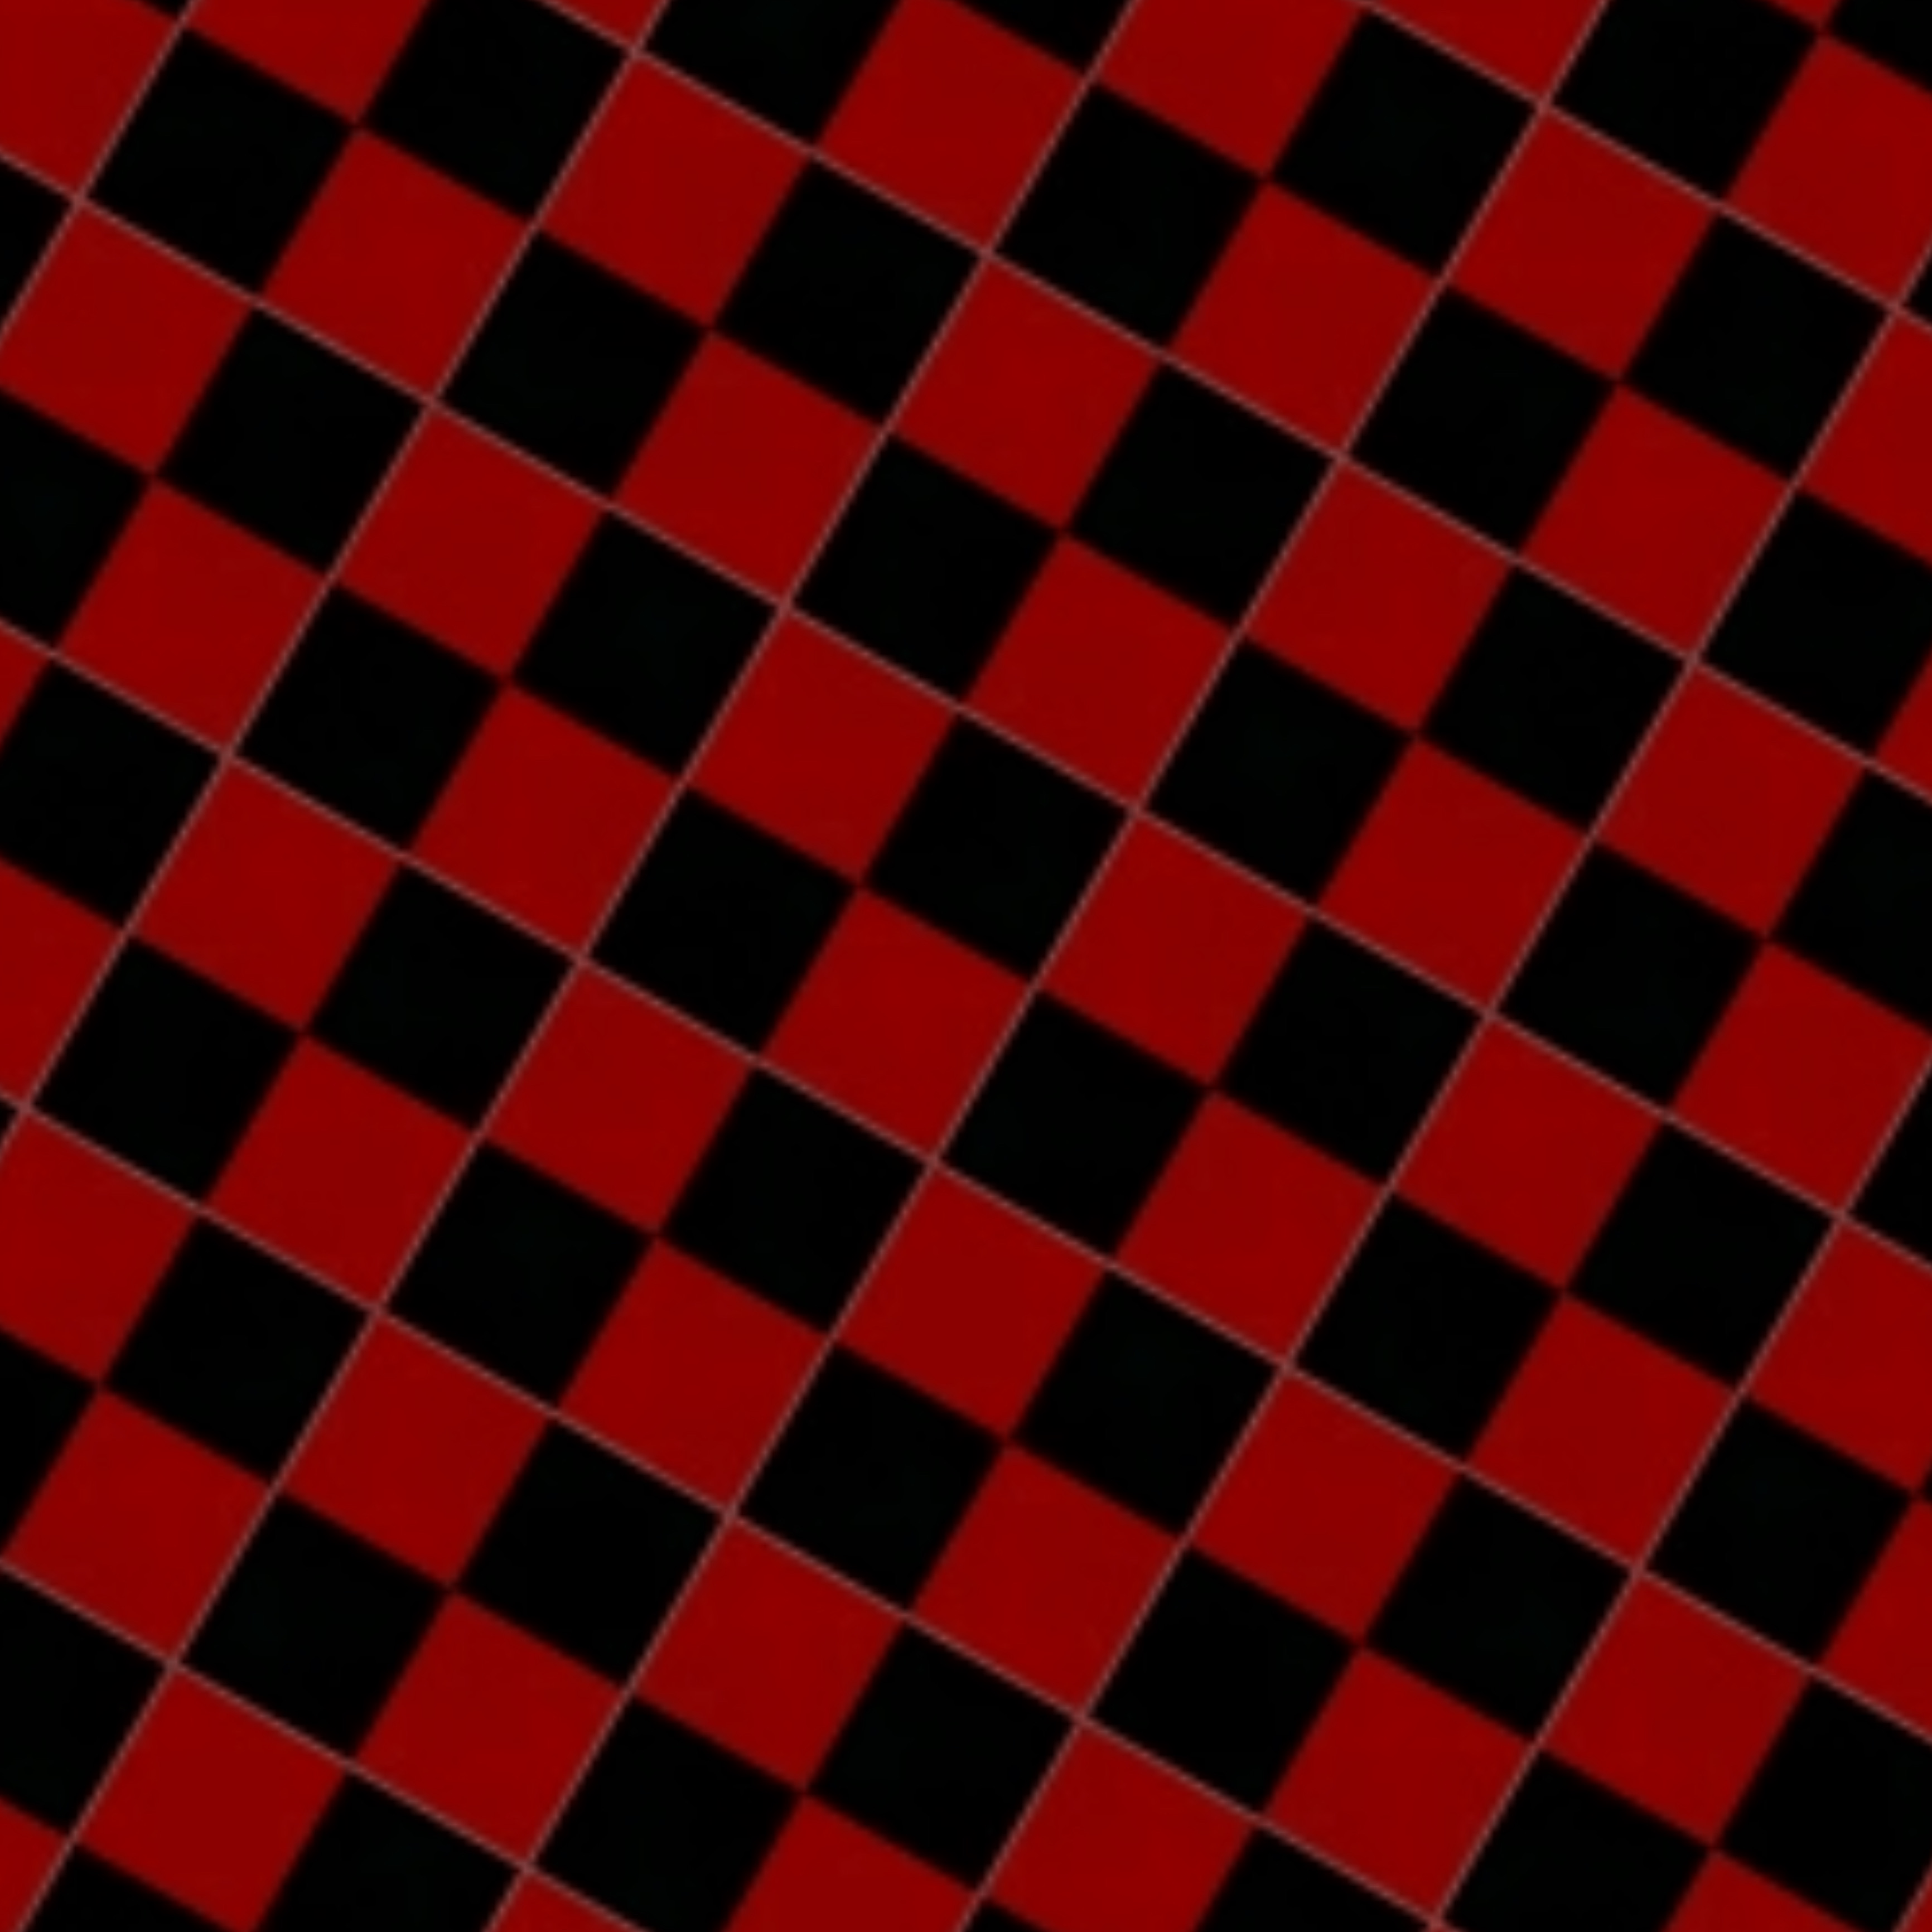 Игра красное черное квадрат. Красно черная клетка. Черно красная клетка. Красный фон квадрат. Красный квадратик.